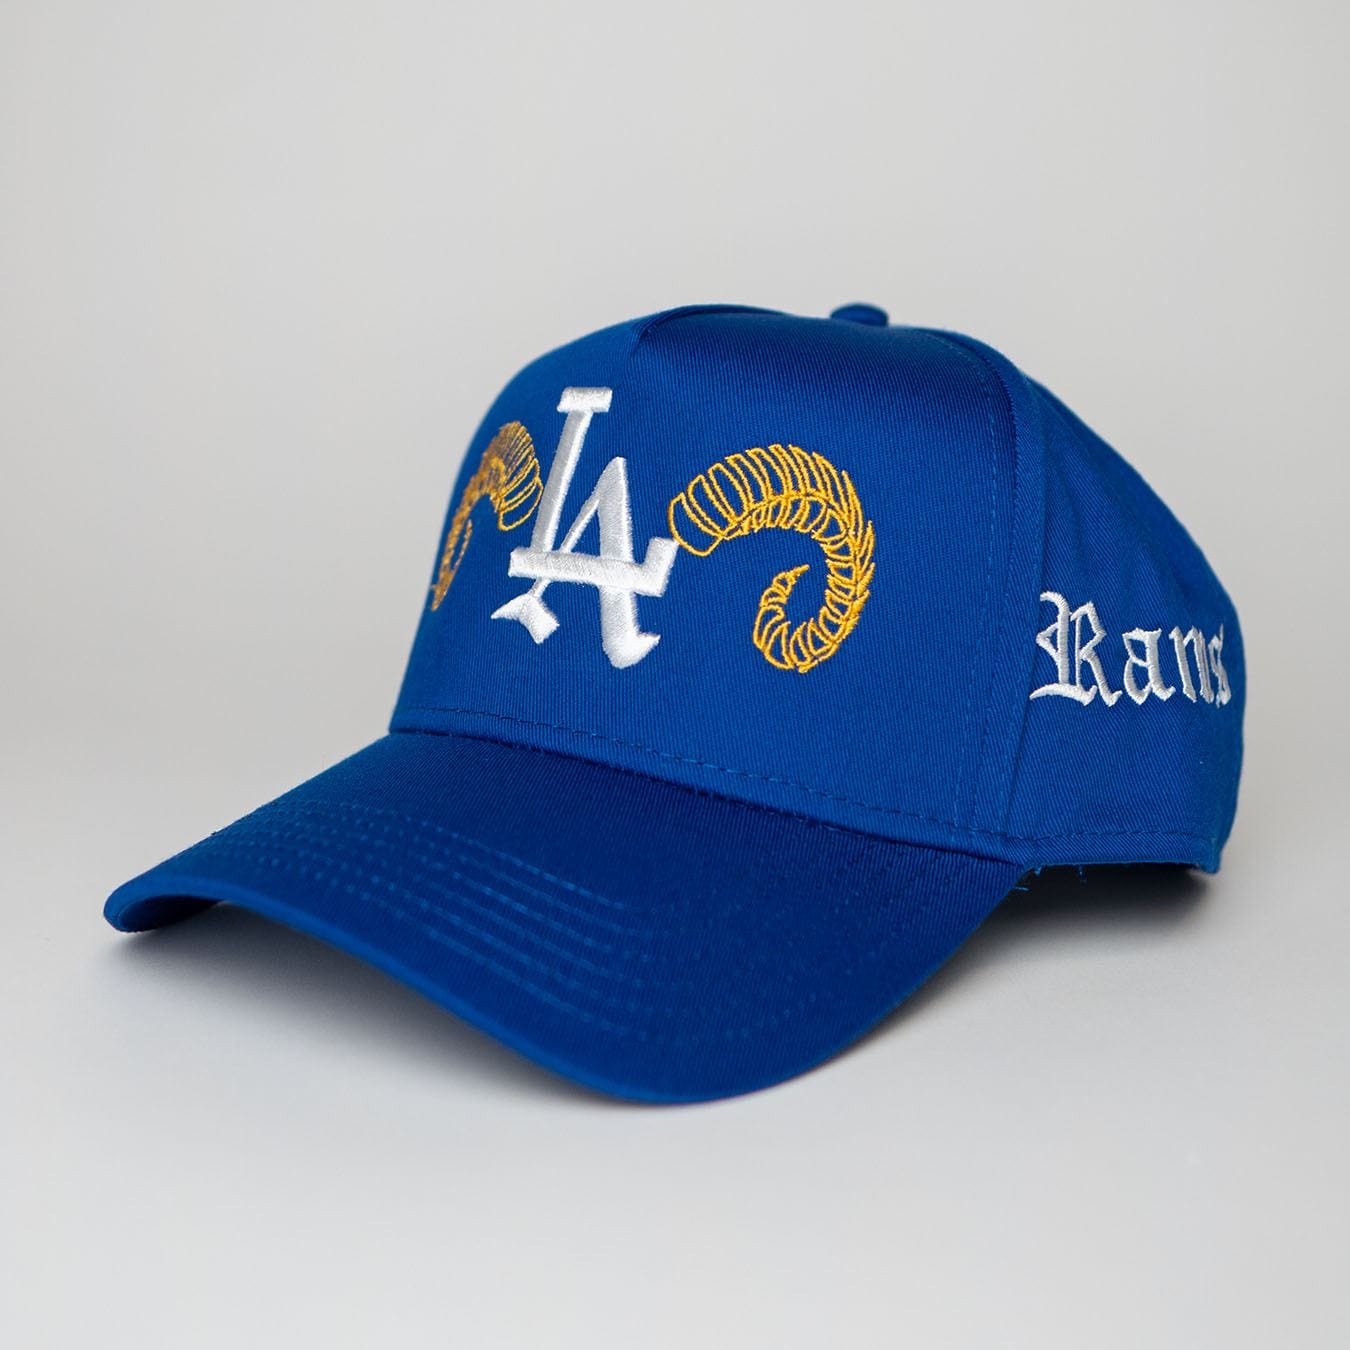 LA 'Rams' Premium Snapback in Royal Blue Loyal Origins 